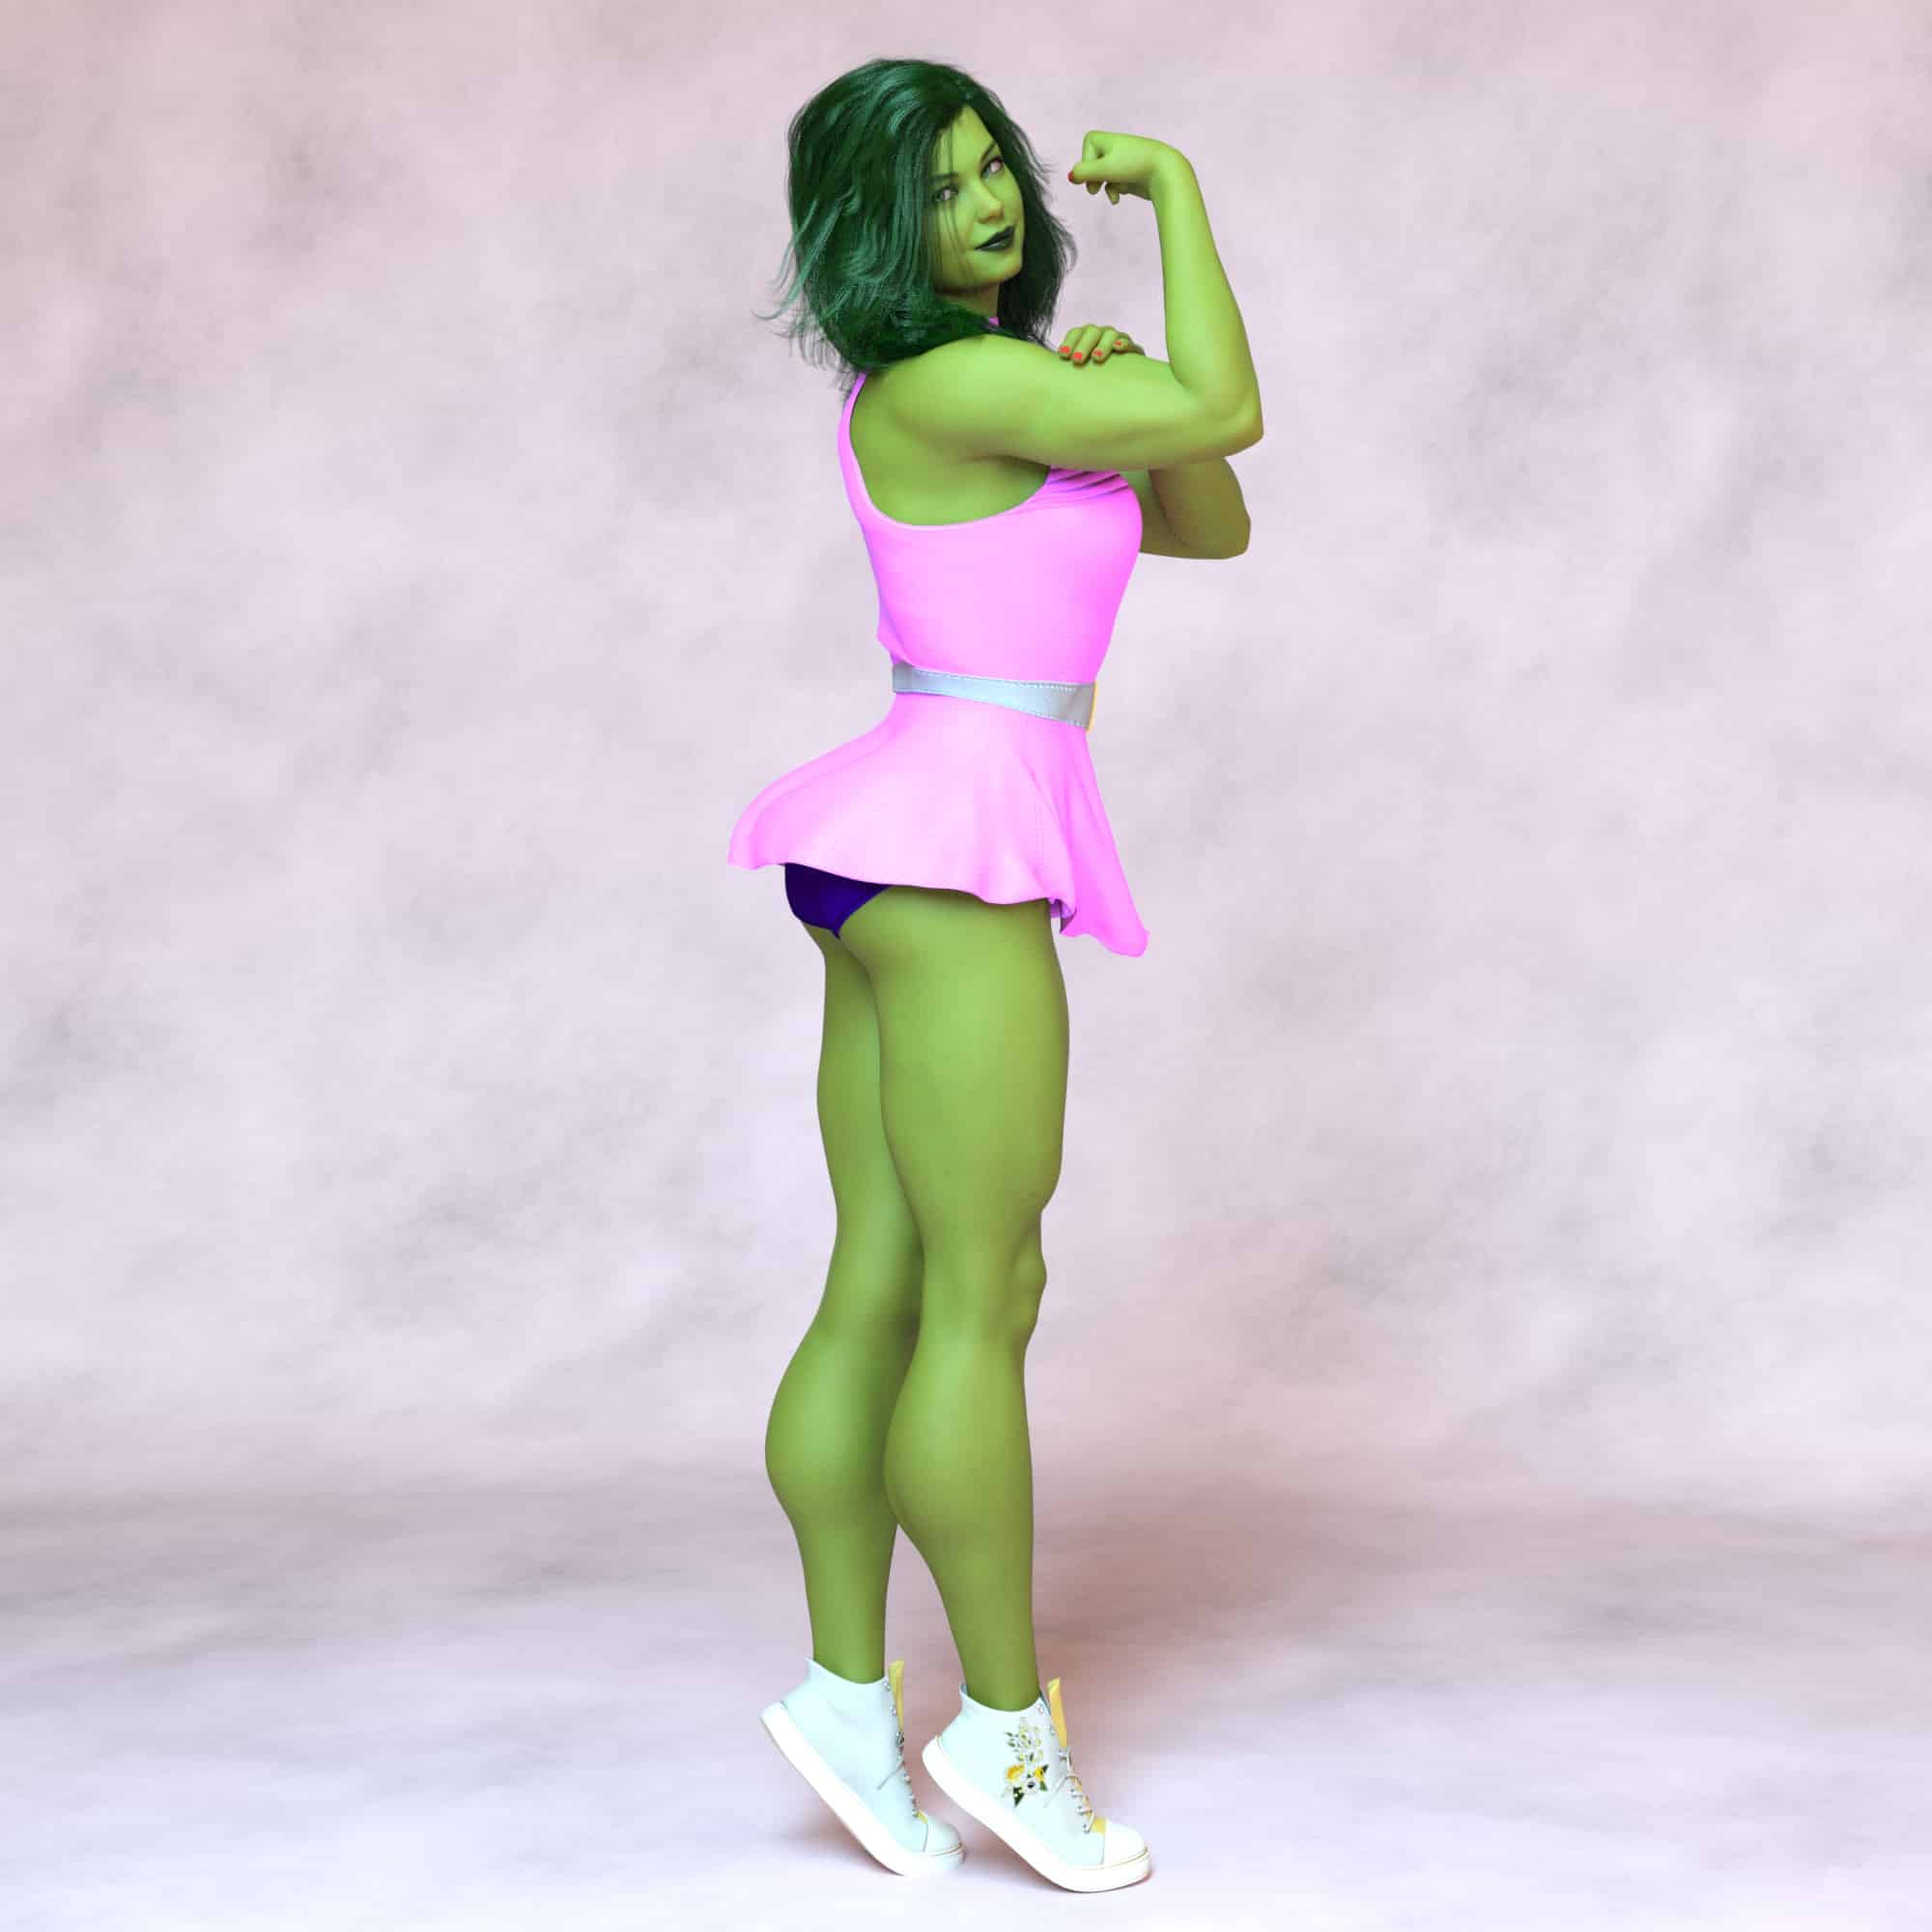 She hulk posing 2 - 3D Artwork